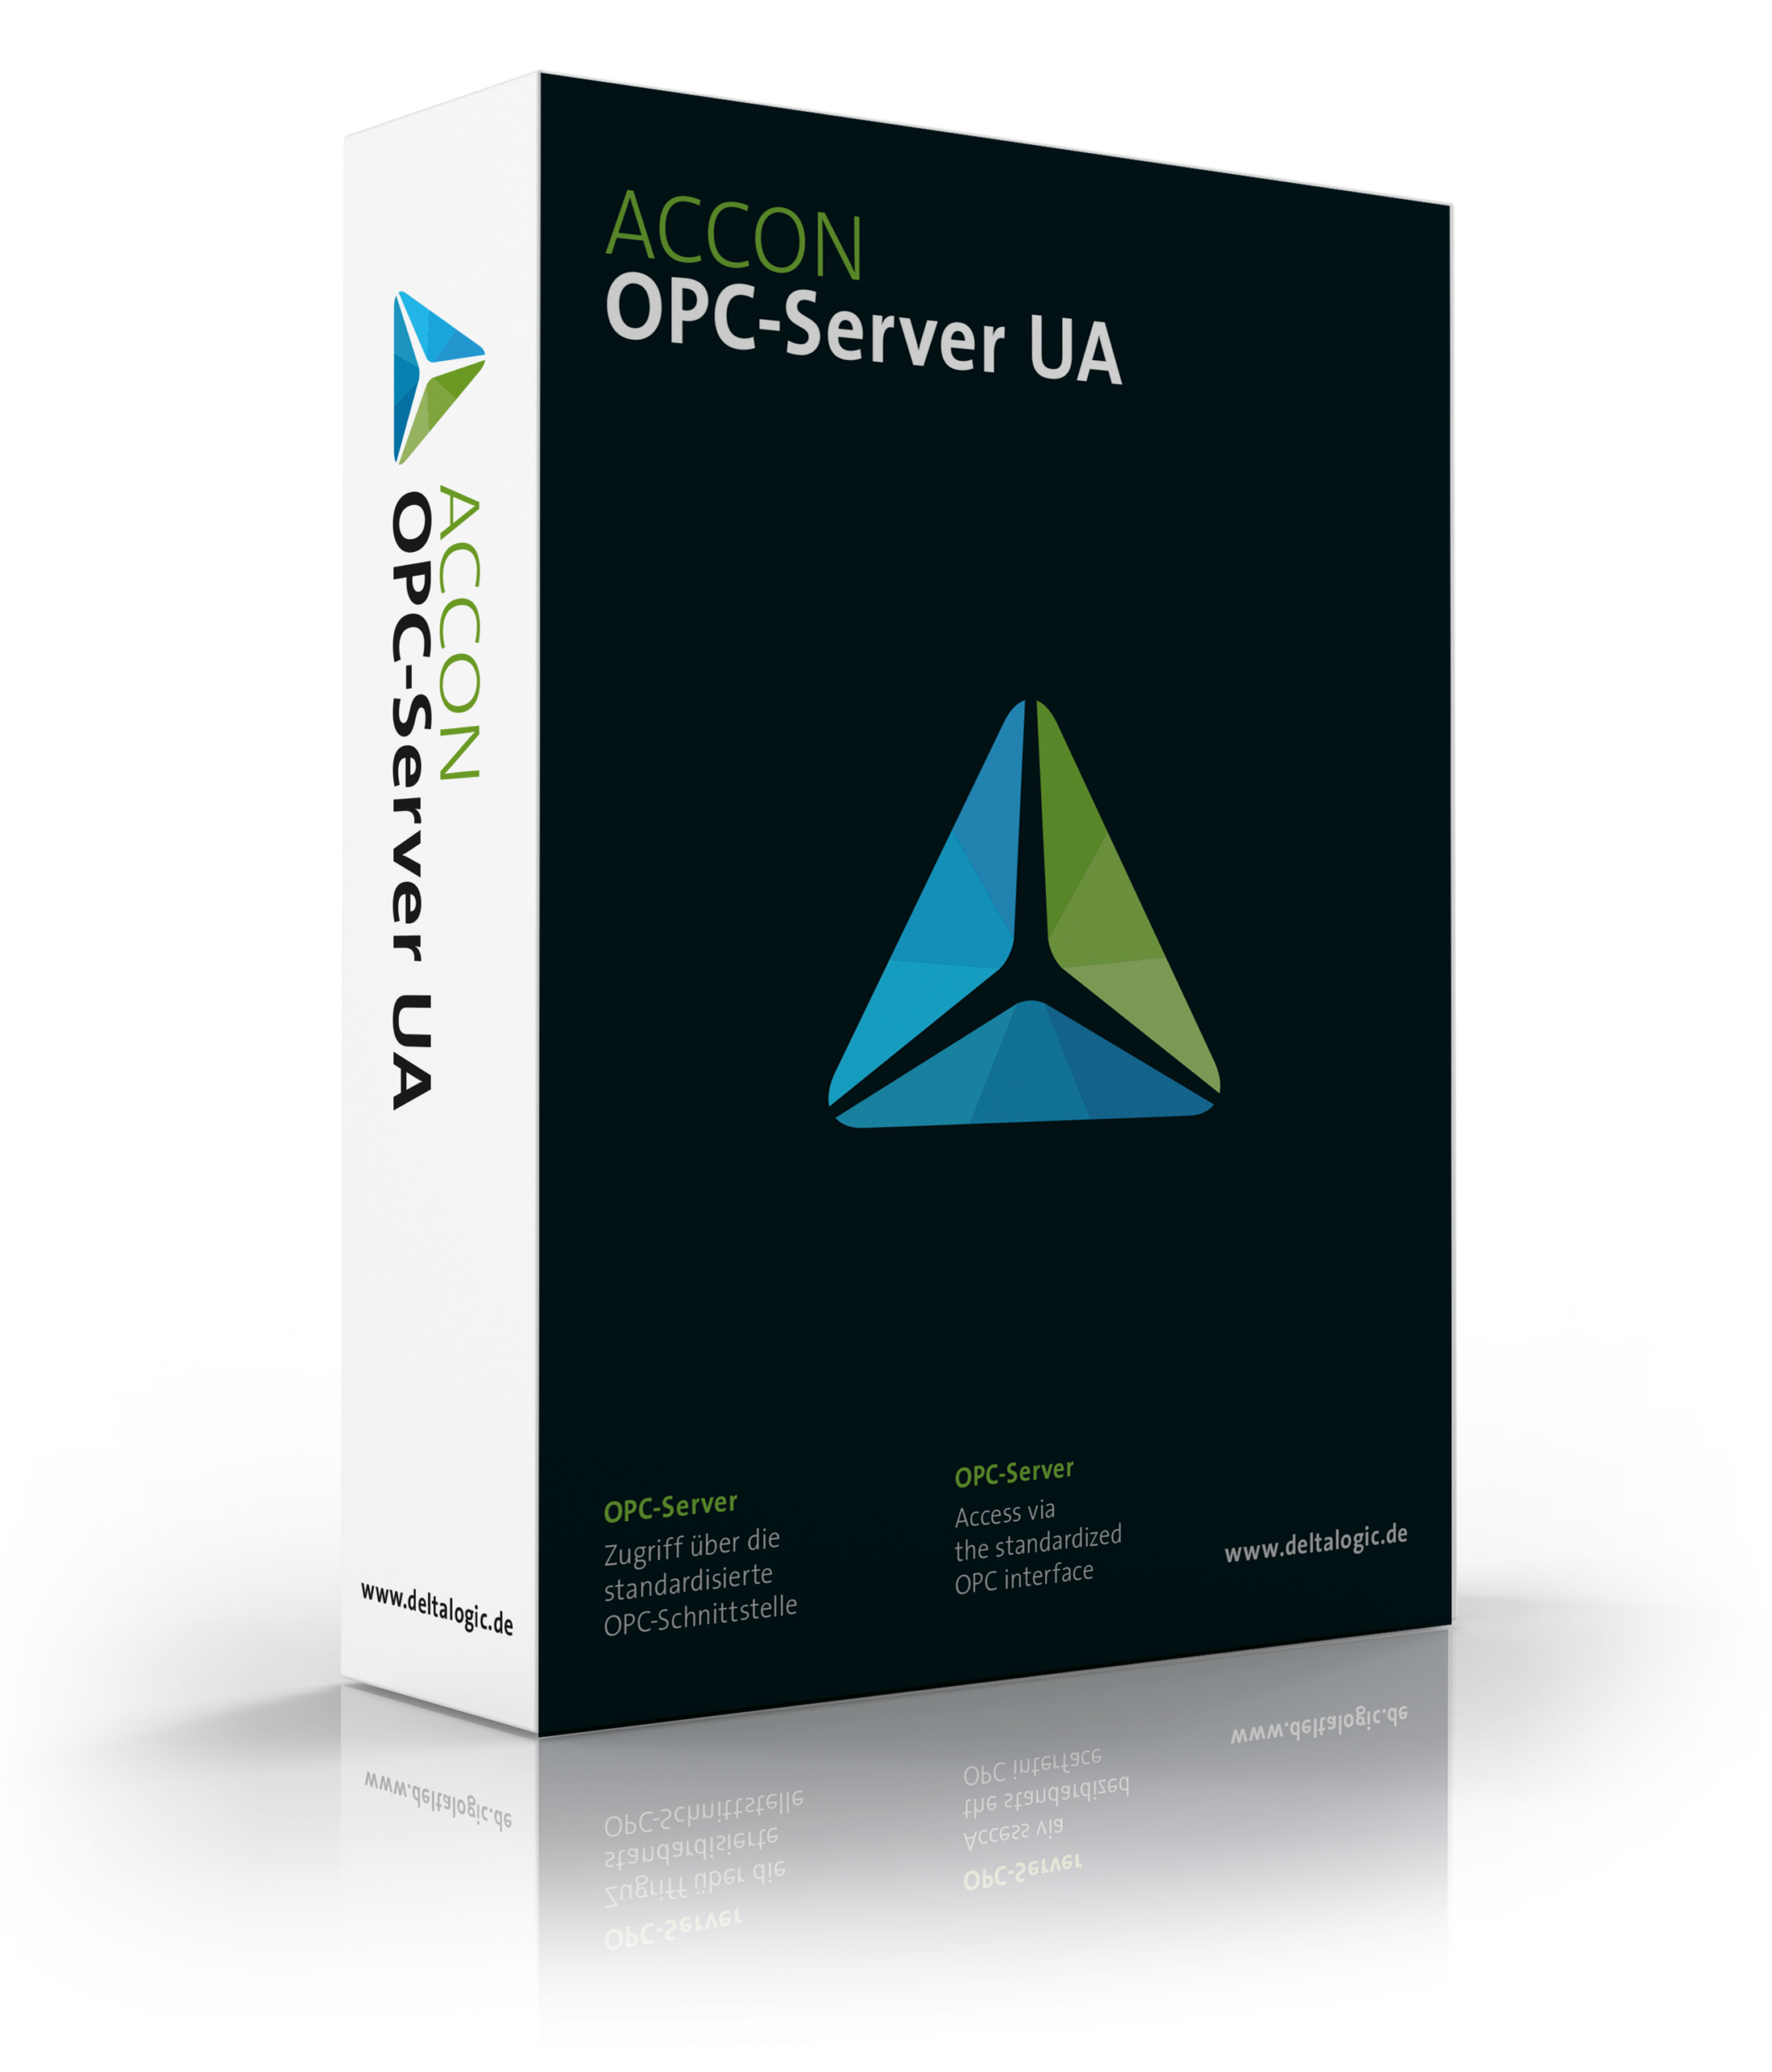 ACCON-OPC-Server UA for Siemens S7-300, S7-400, S7-1200, S7-1500, 840D sl, 840D pl, 810D pl, ONE